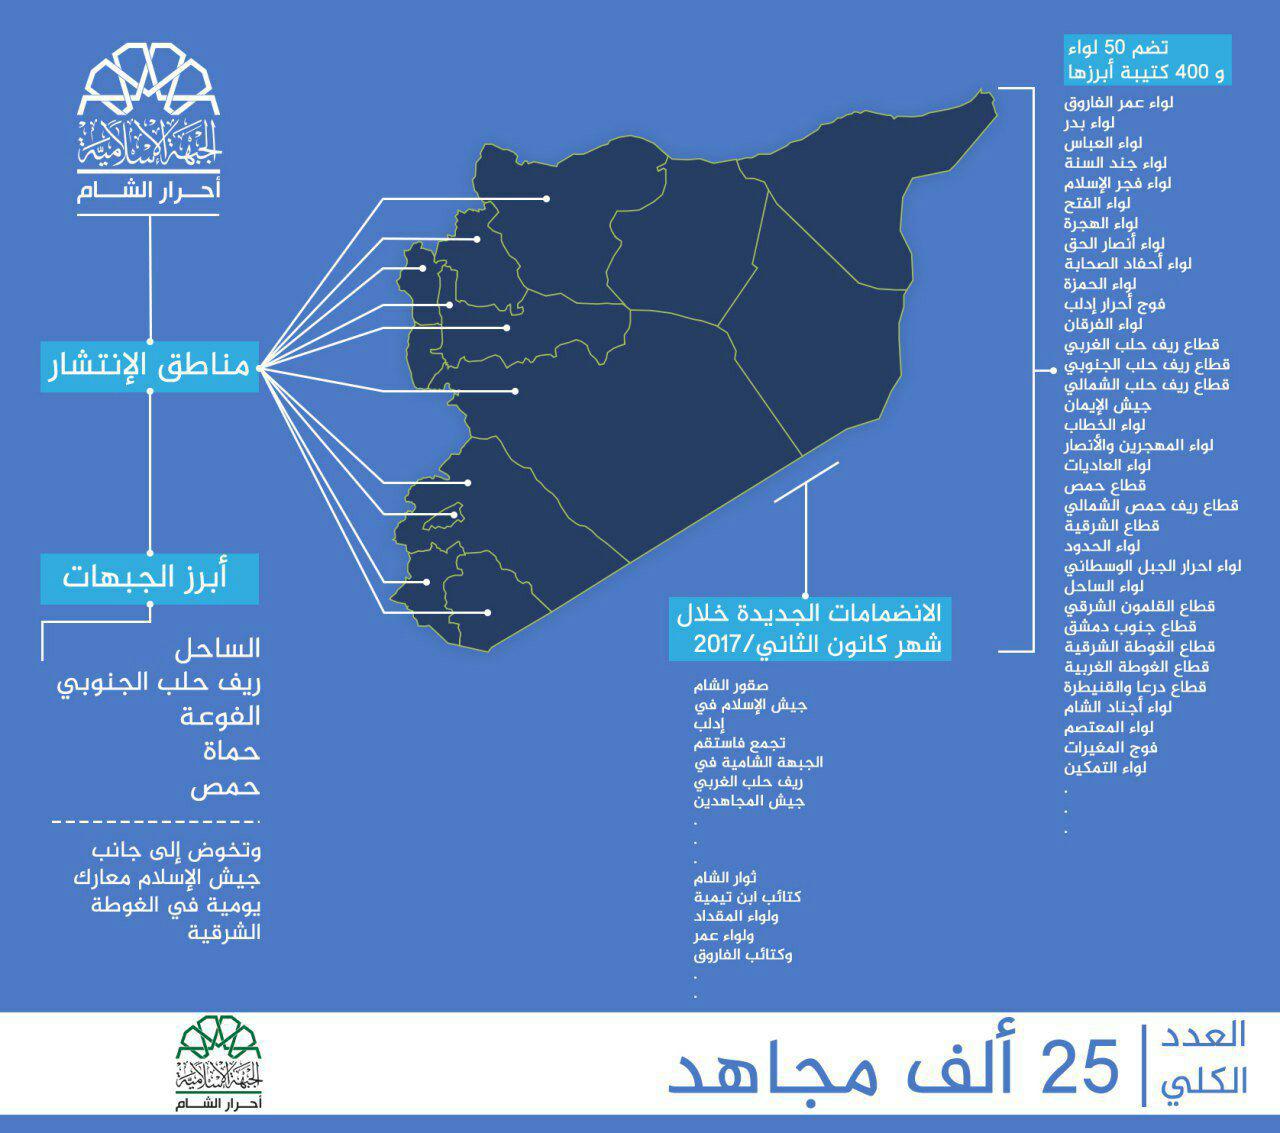 "إنفوغرافيك" لـ "أحرار الشام"- الأحد 5 شباط (تويتر)